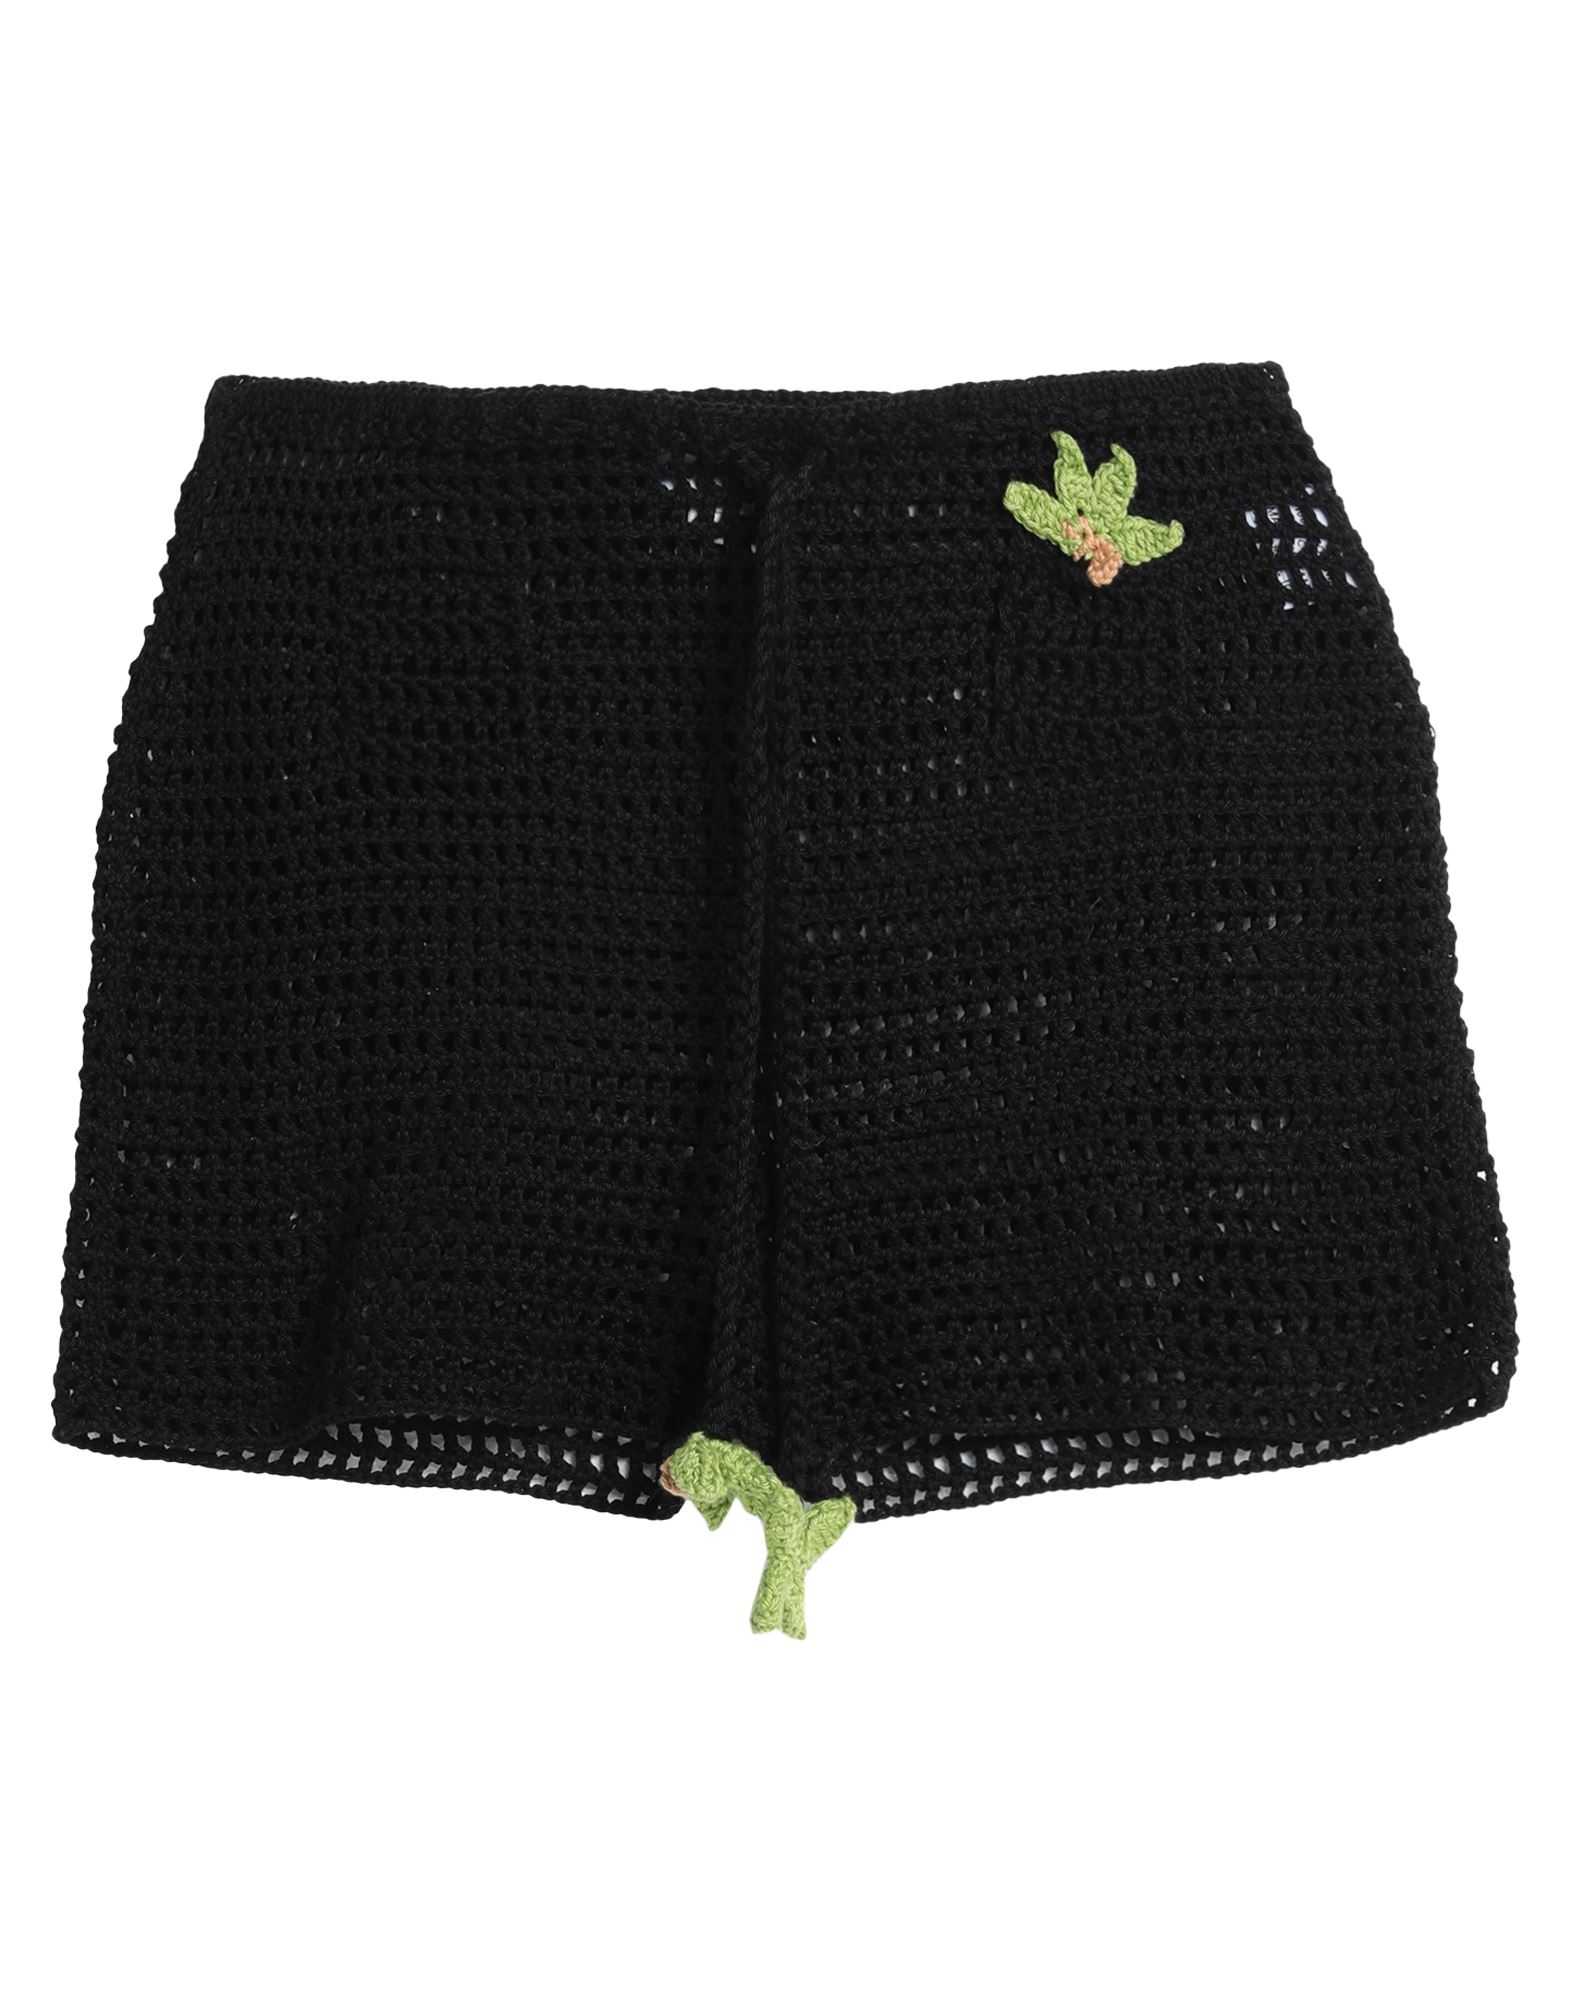 Mixik Woman Shorts & Bermuda Shorts Black Size S Cotton